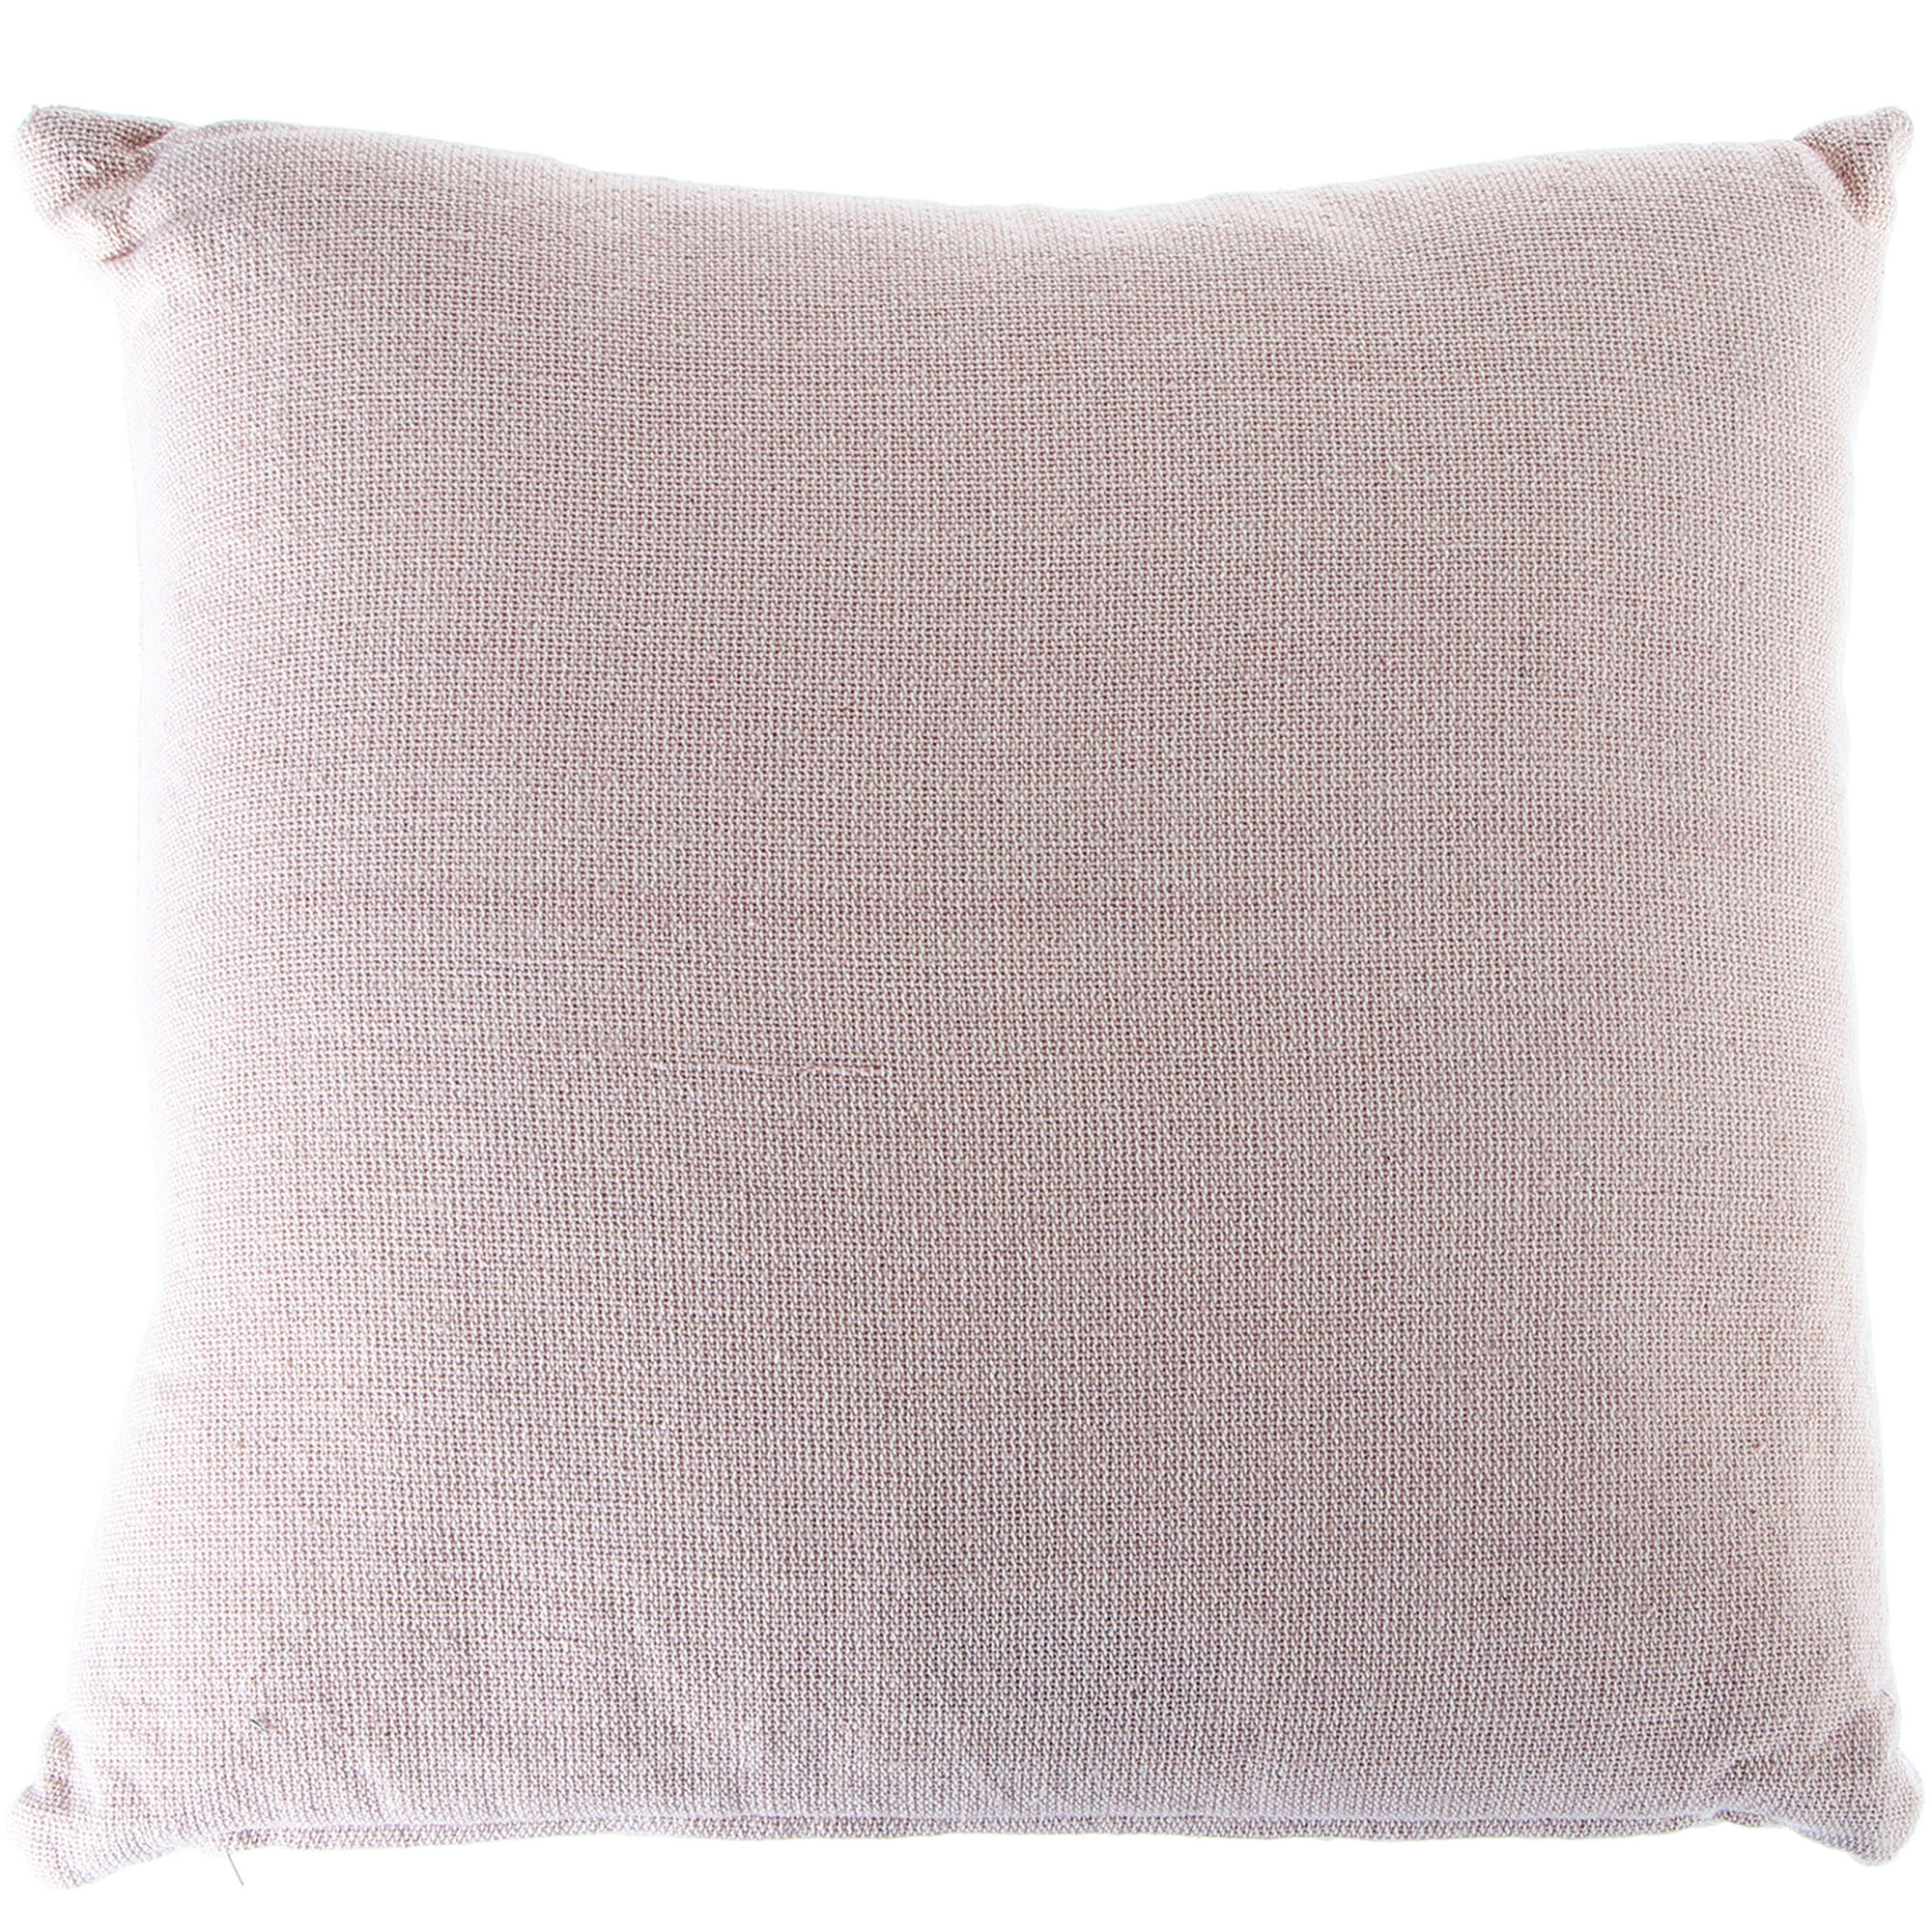 Декоративная подушка Kaemingk обиход розовая 45х45 см